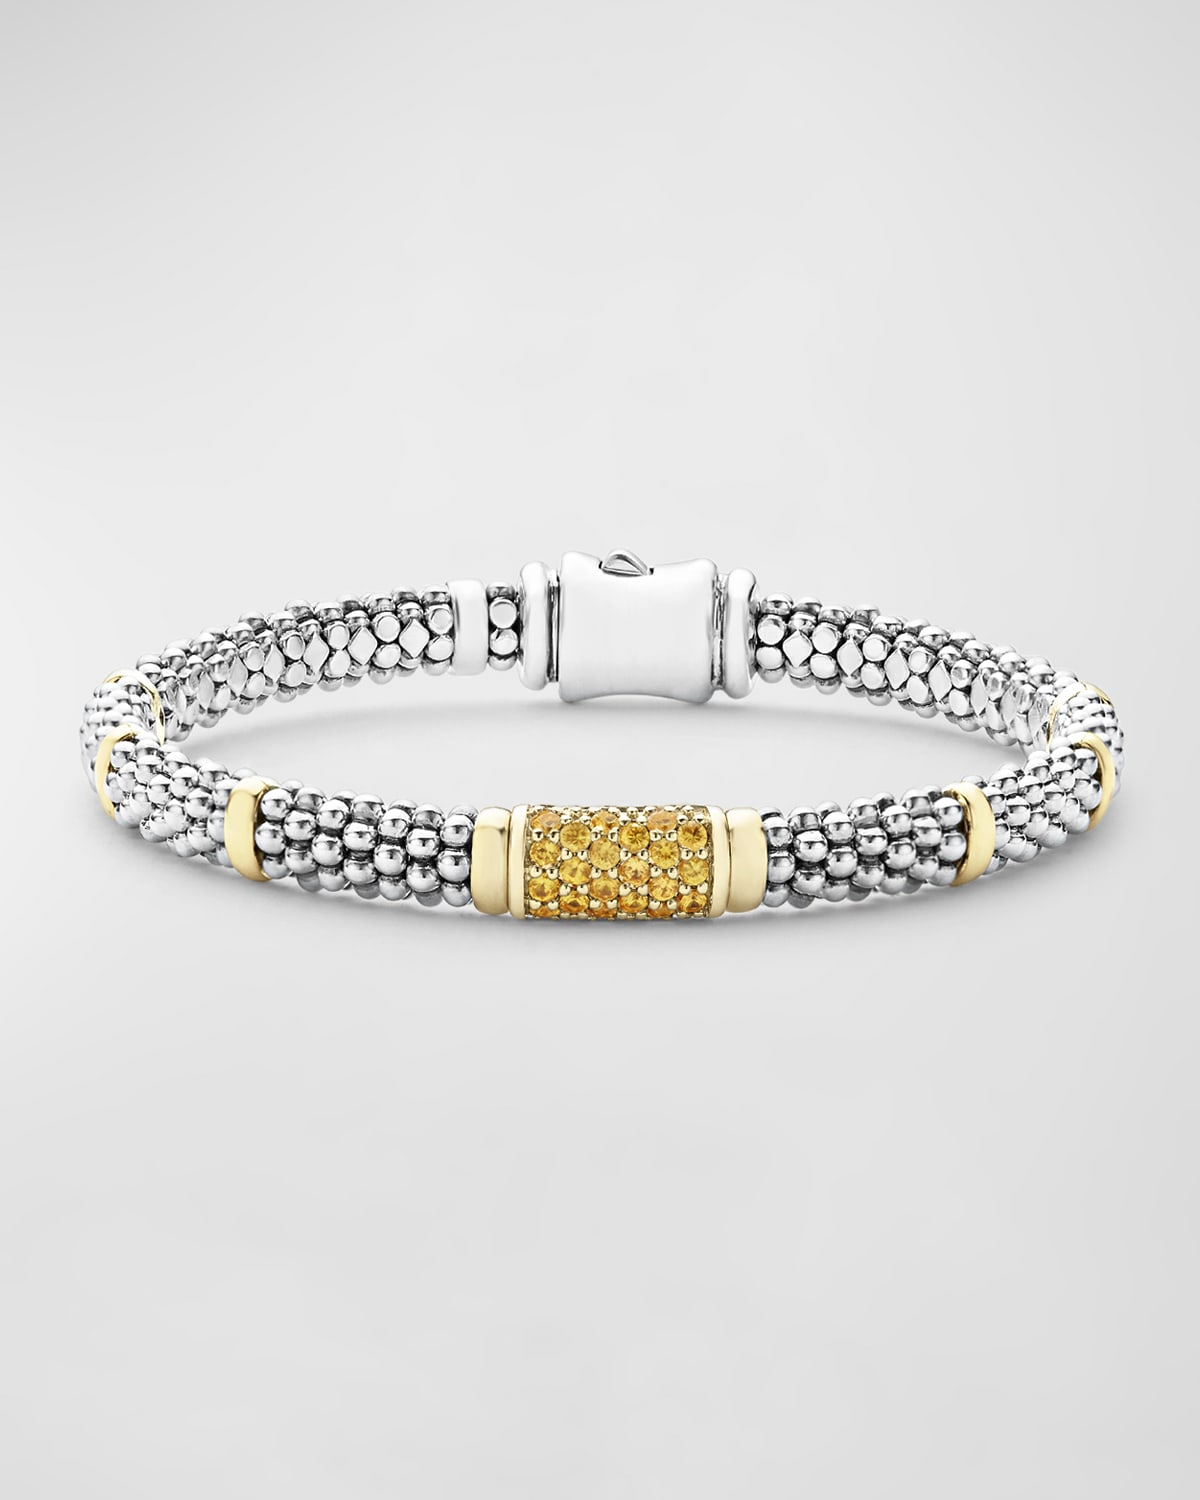 6mm 18K Gold Station on Sterling Silver Caviar Bead Bracelet with Pavé Diamonds